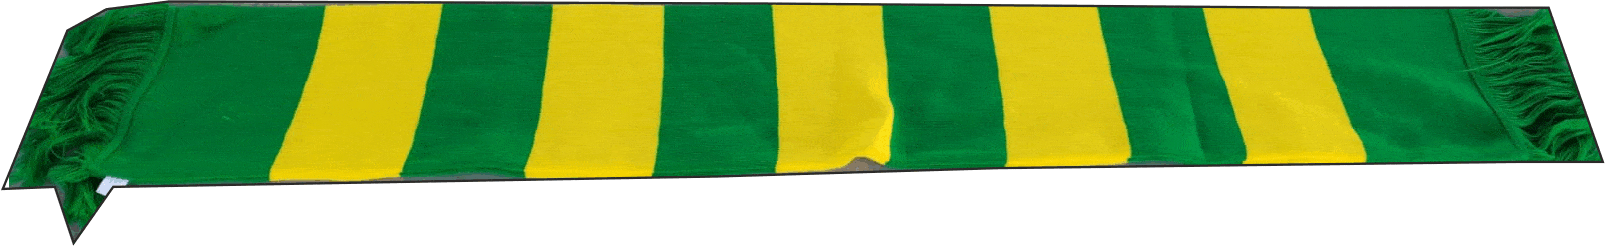 sciarpa a bande giallo verde